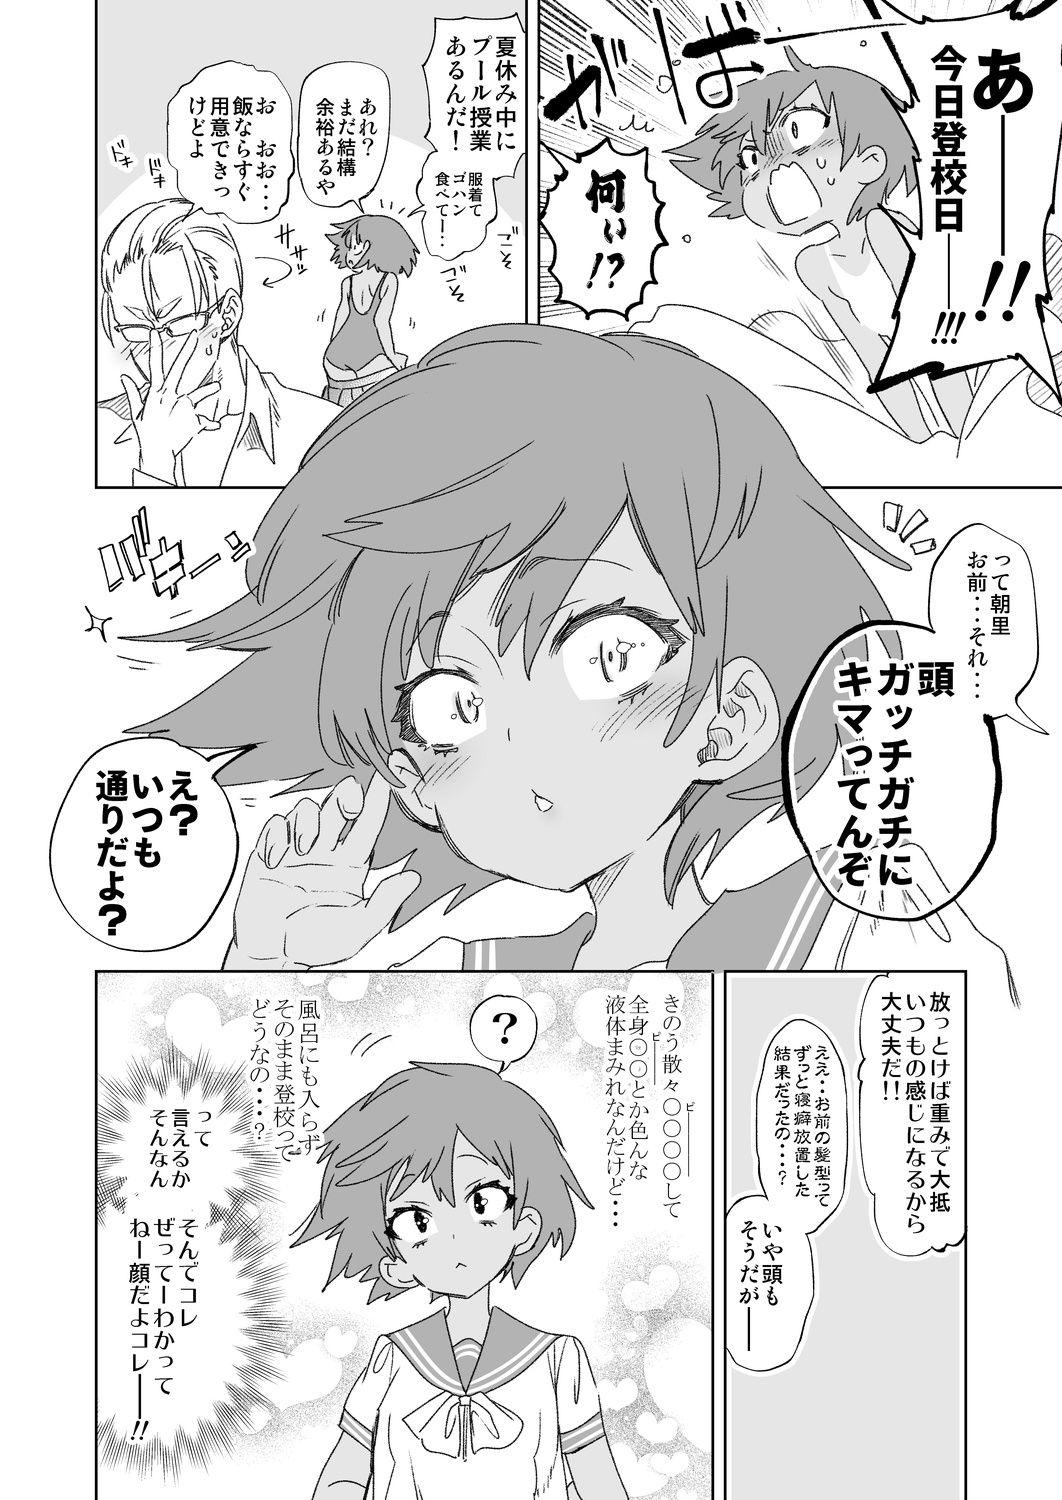 Hotwife 2haku 3ka no Hanayome day 2 - Original Desnuda - Page 6